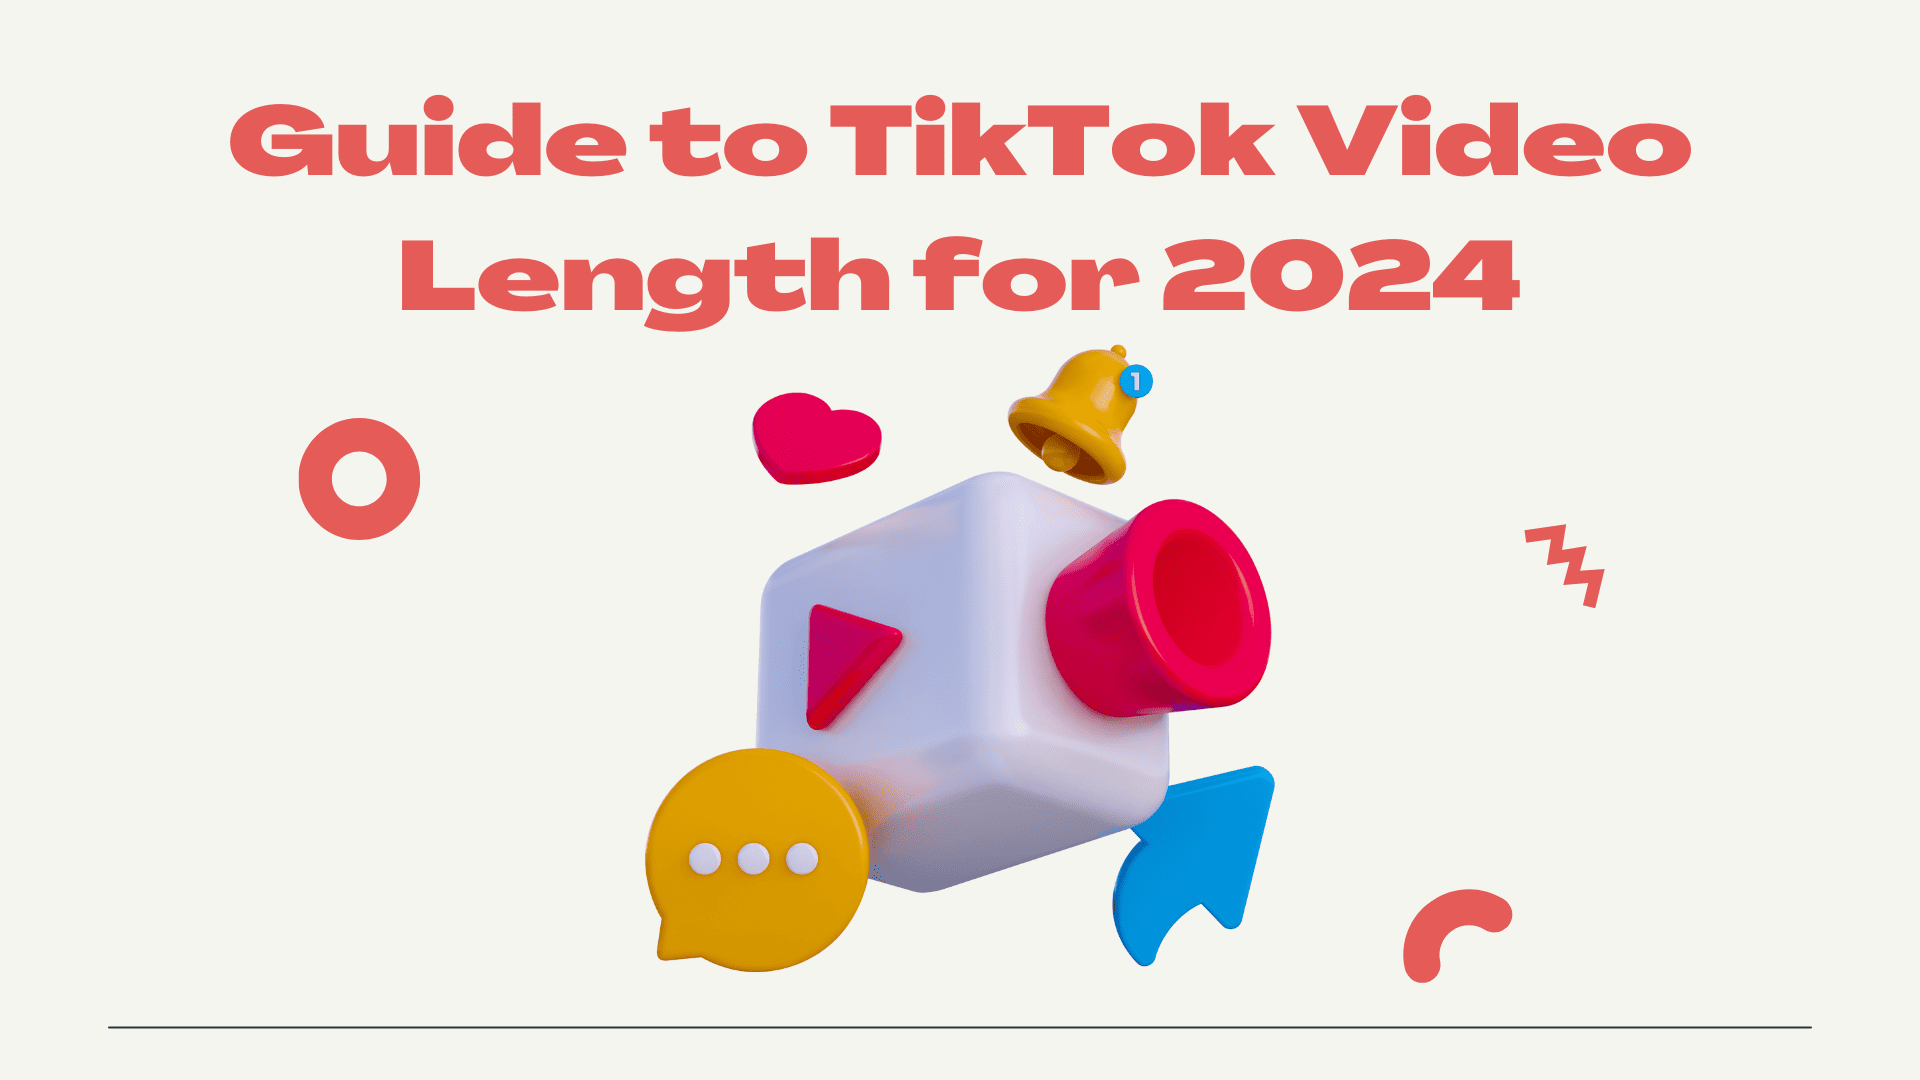 TikTok Video Length